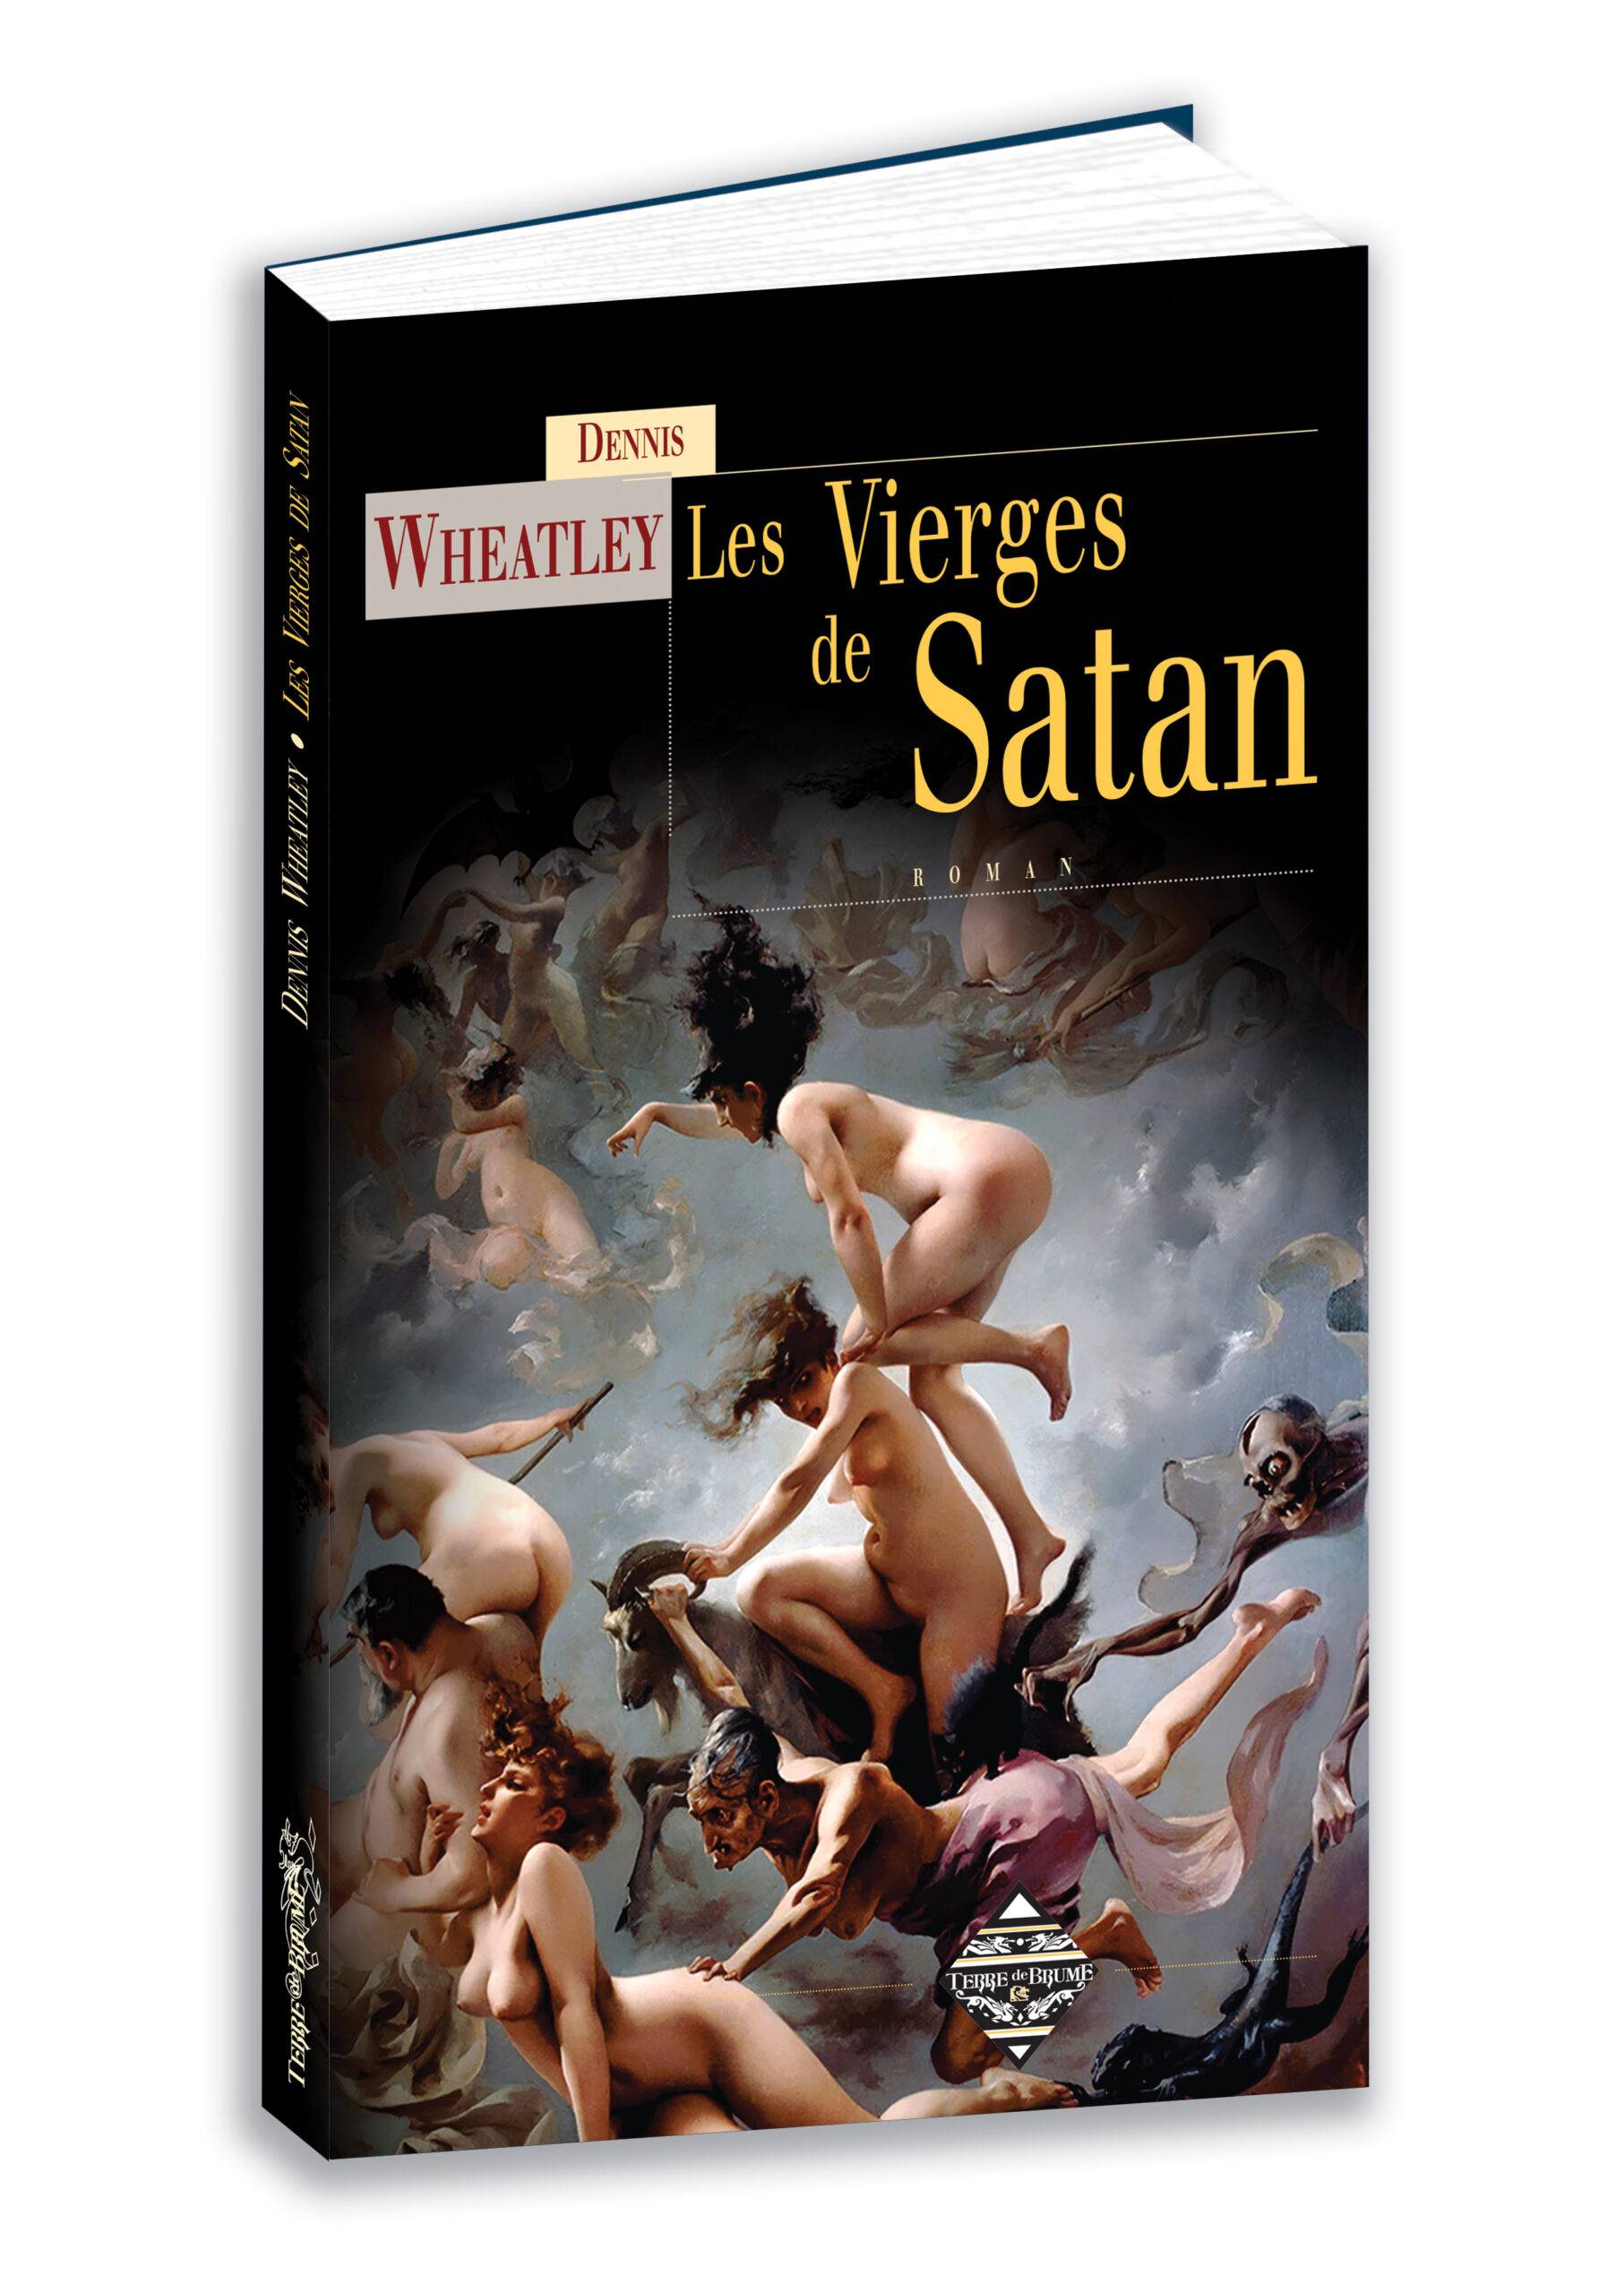 Les vierges de Satan - Dennis Wheatley Vierges-couv.-3D-scaled